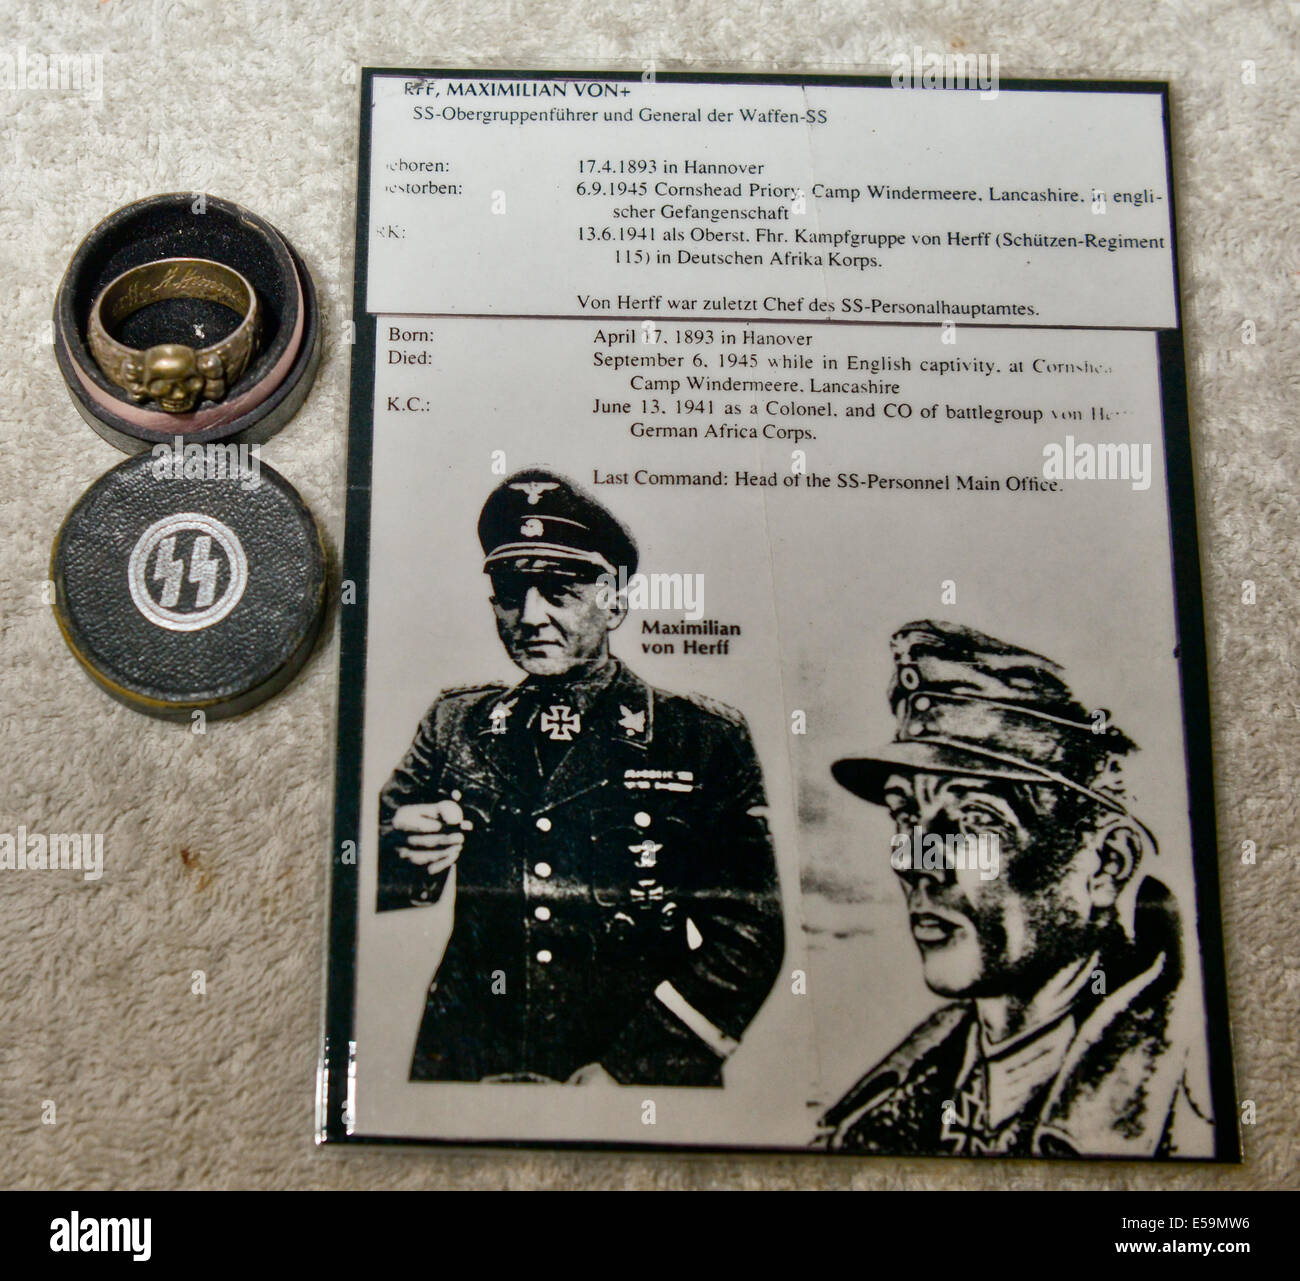 Foto di:Jules Annan immagine mostra:Originale SS naziste la morte della  testa dell'anello d'onore e scatola originale data ; 08/07/2014 Foto stock  - Alamy